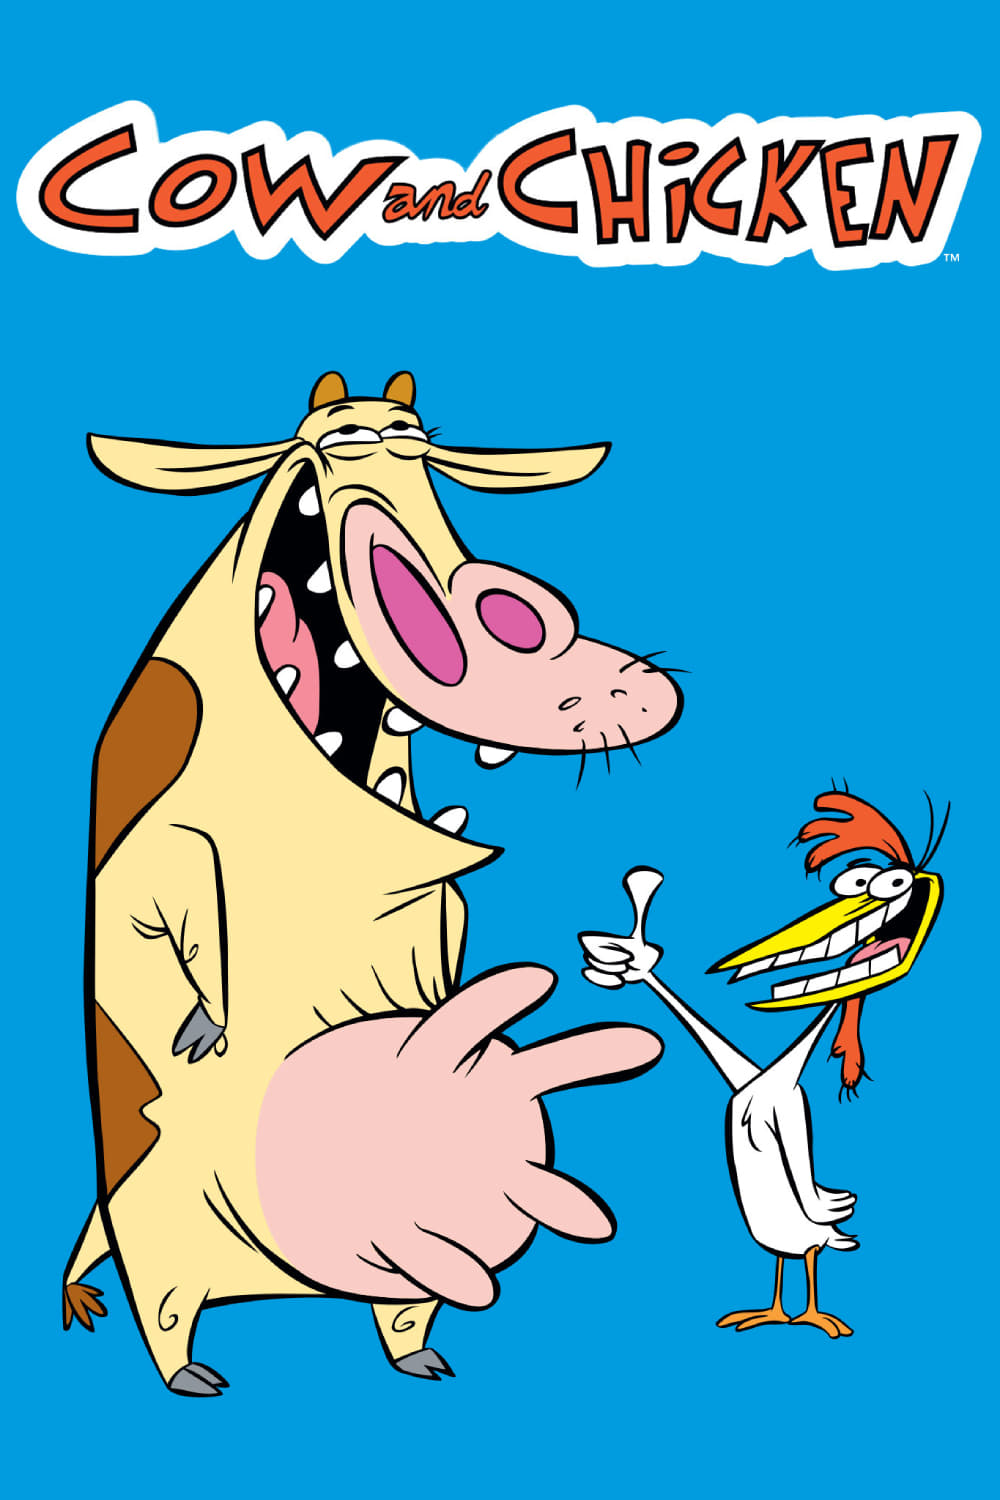 A Vaca e o Frango